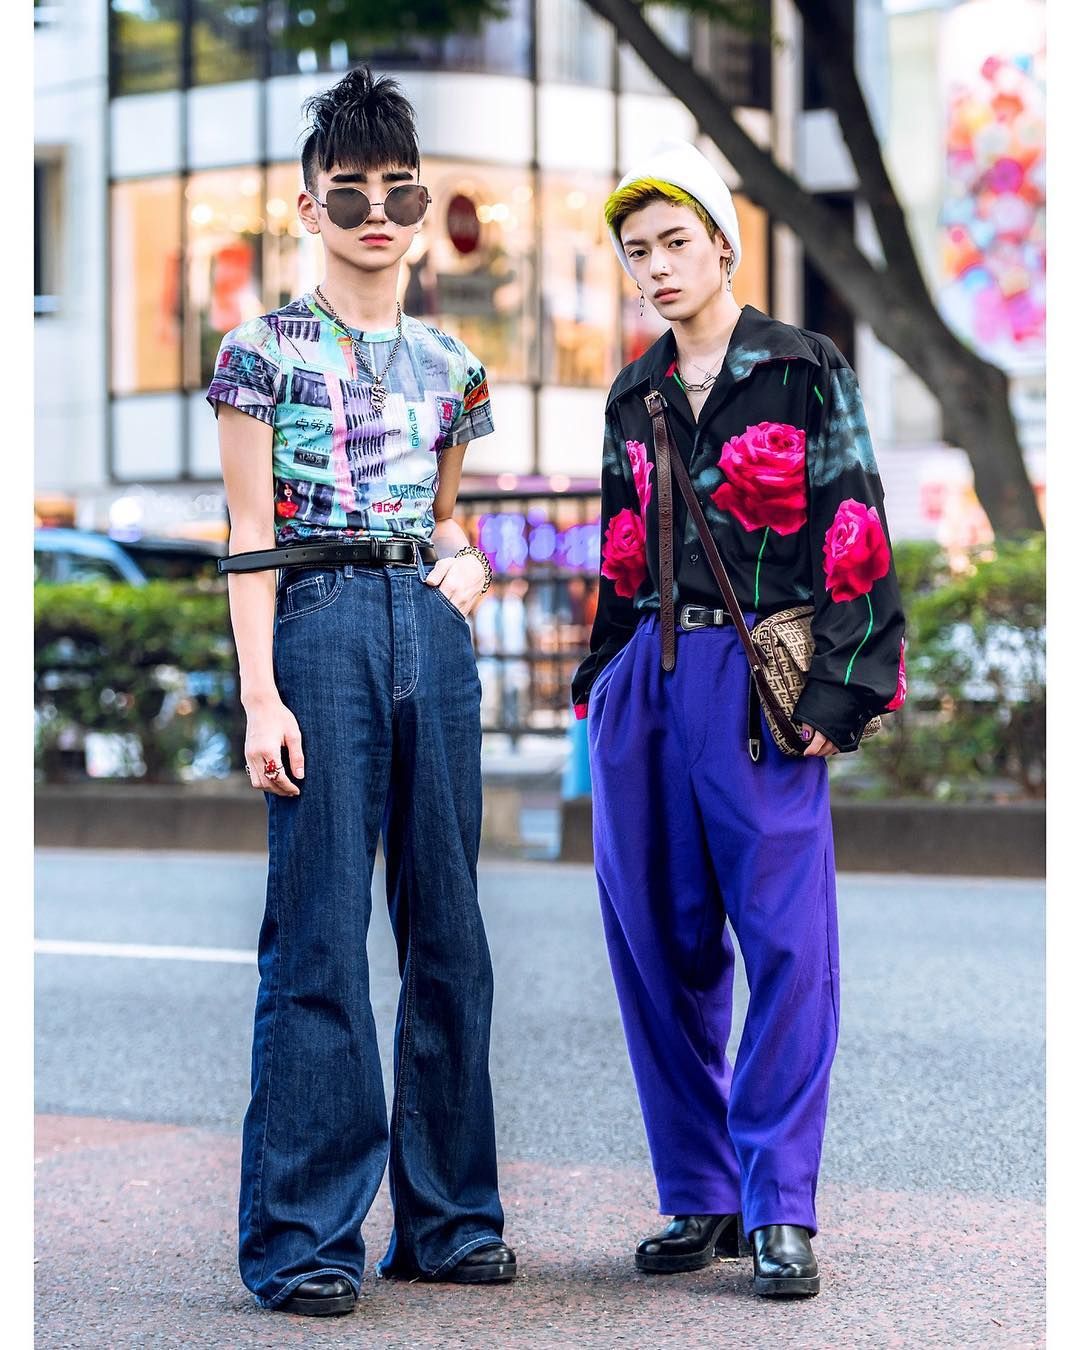 Harajuku fashion